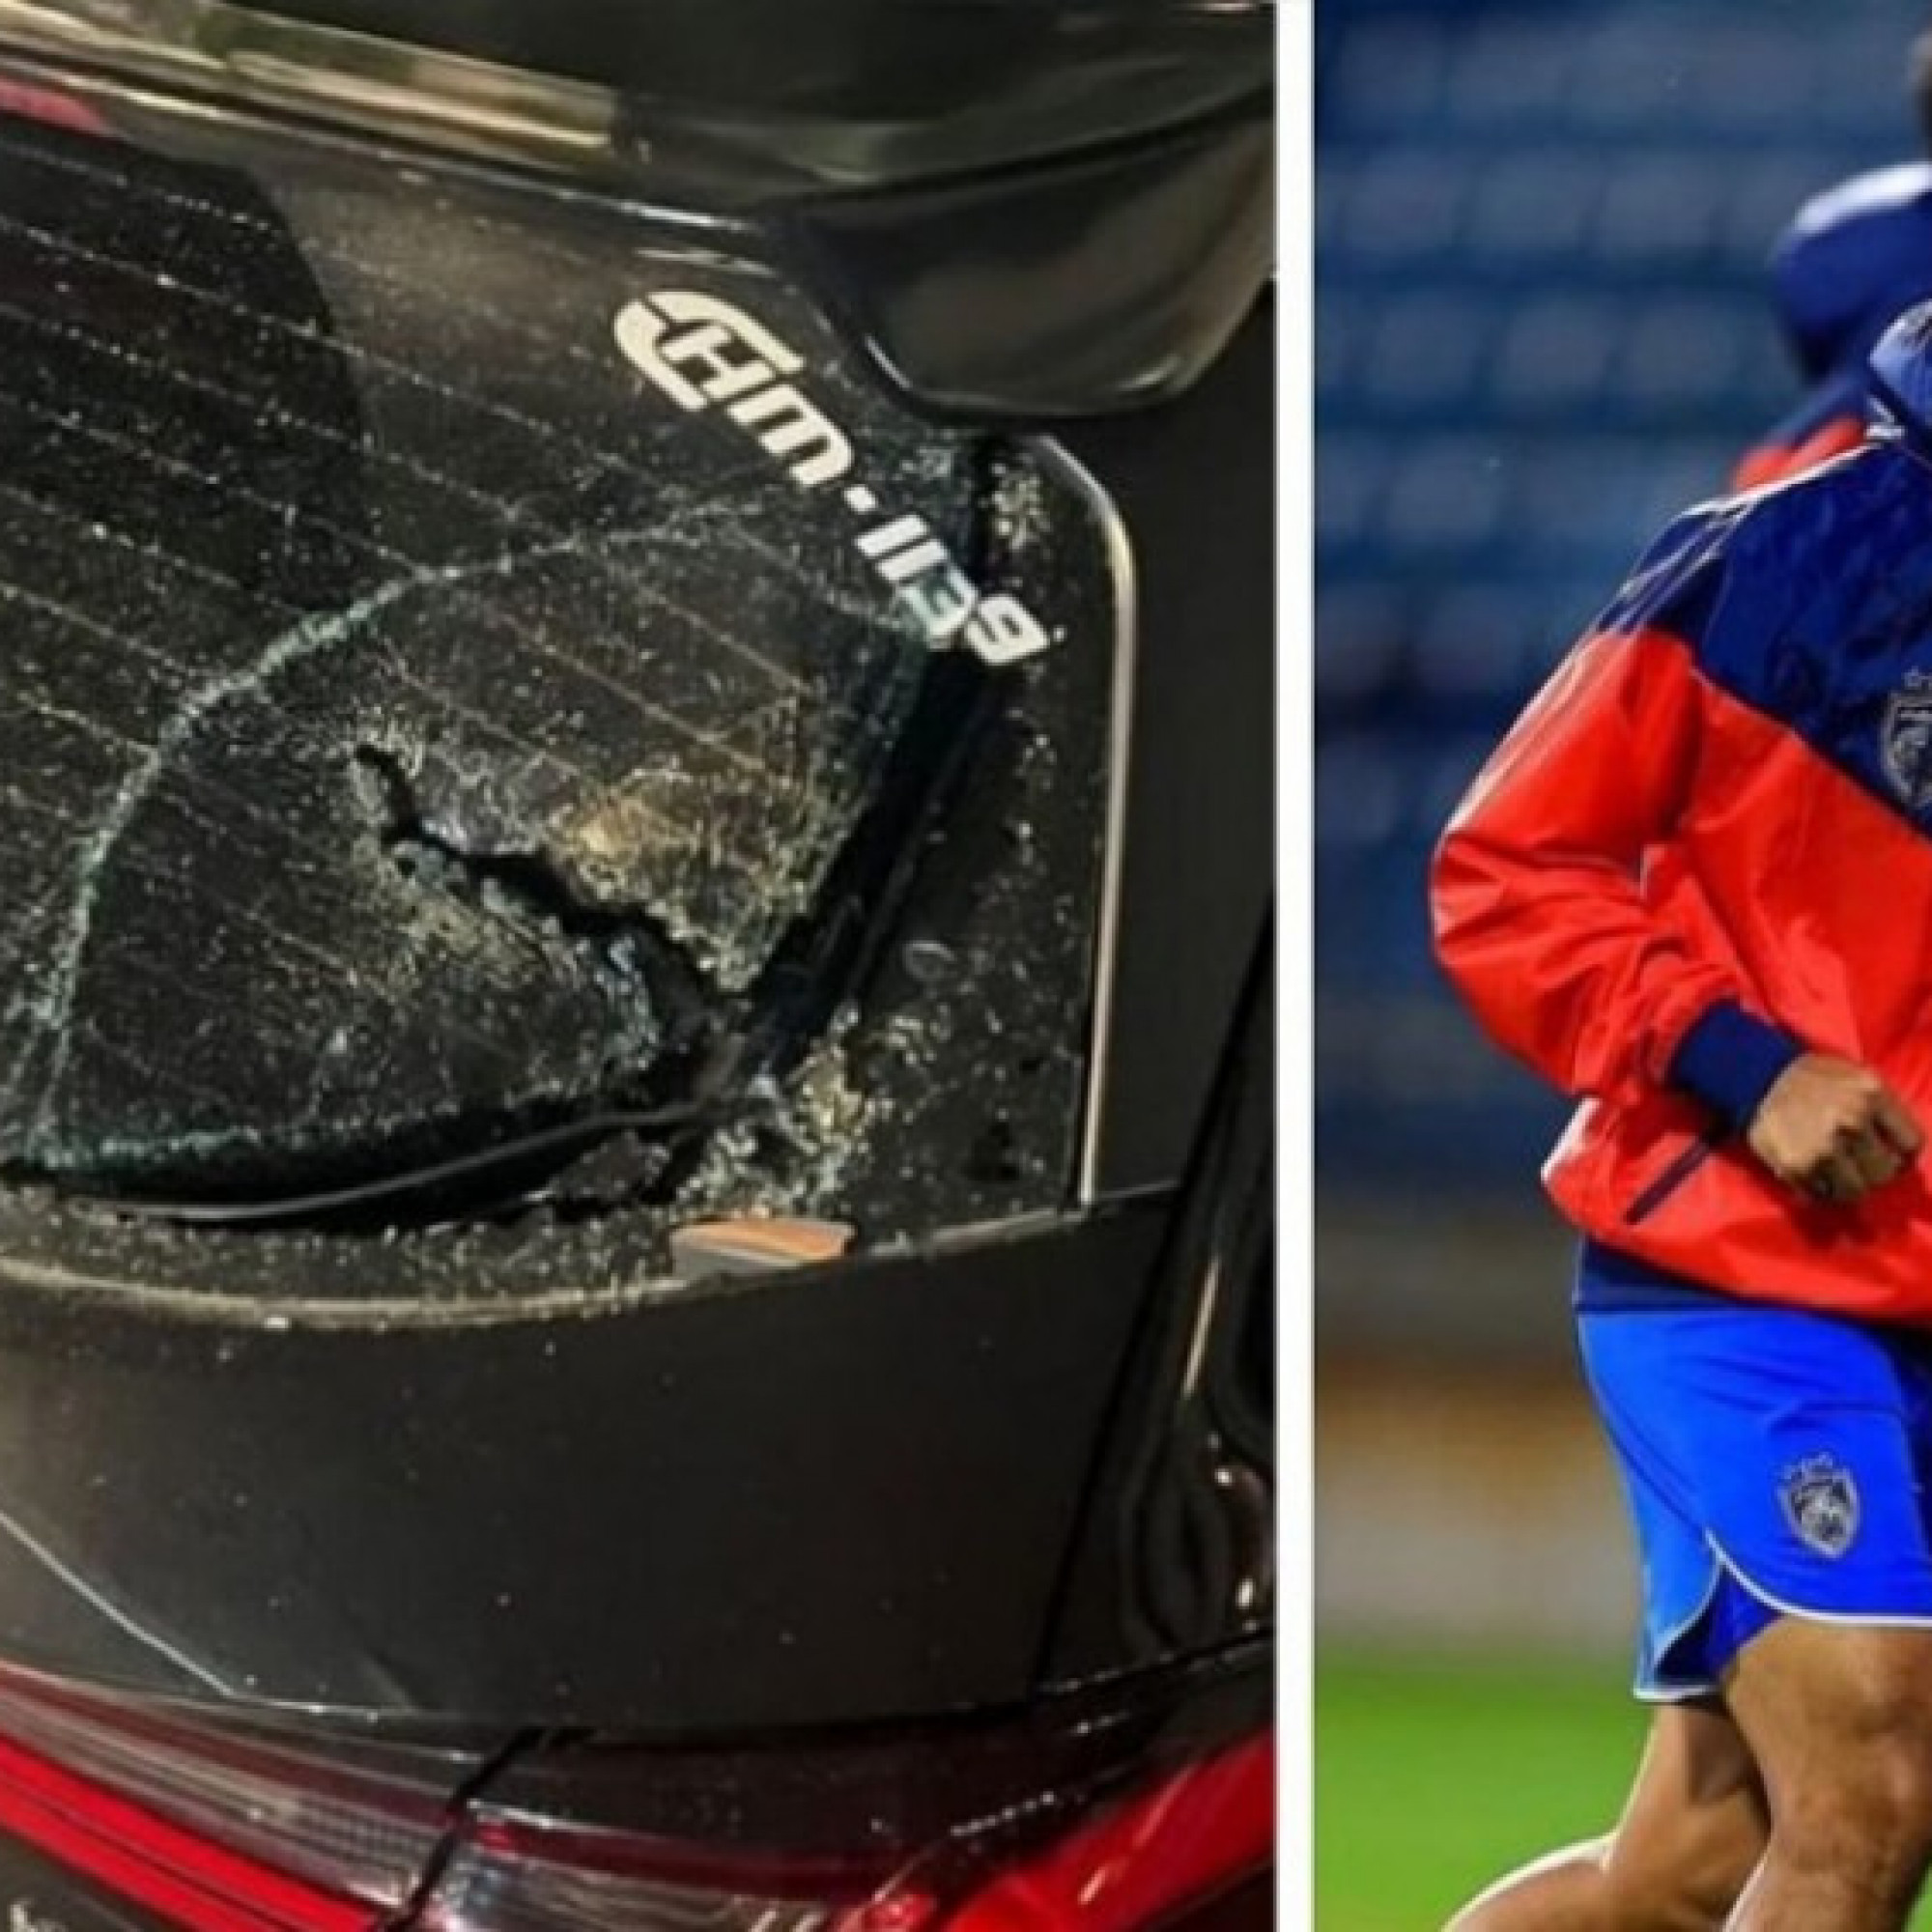  - Rúng động cầu thủ Malaysia thứ 3 bị tấn công trong 1 tuần, xe ô tô bị đập nát kính